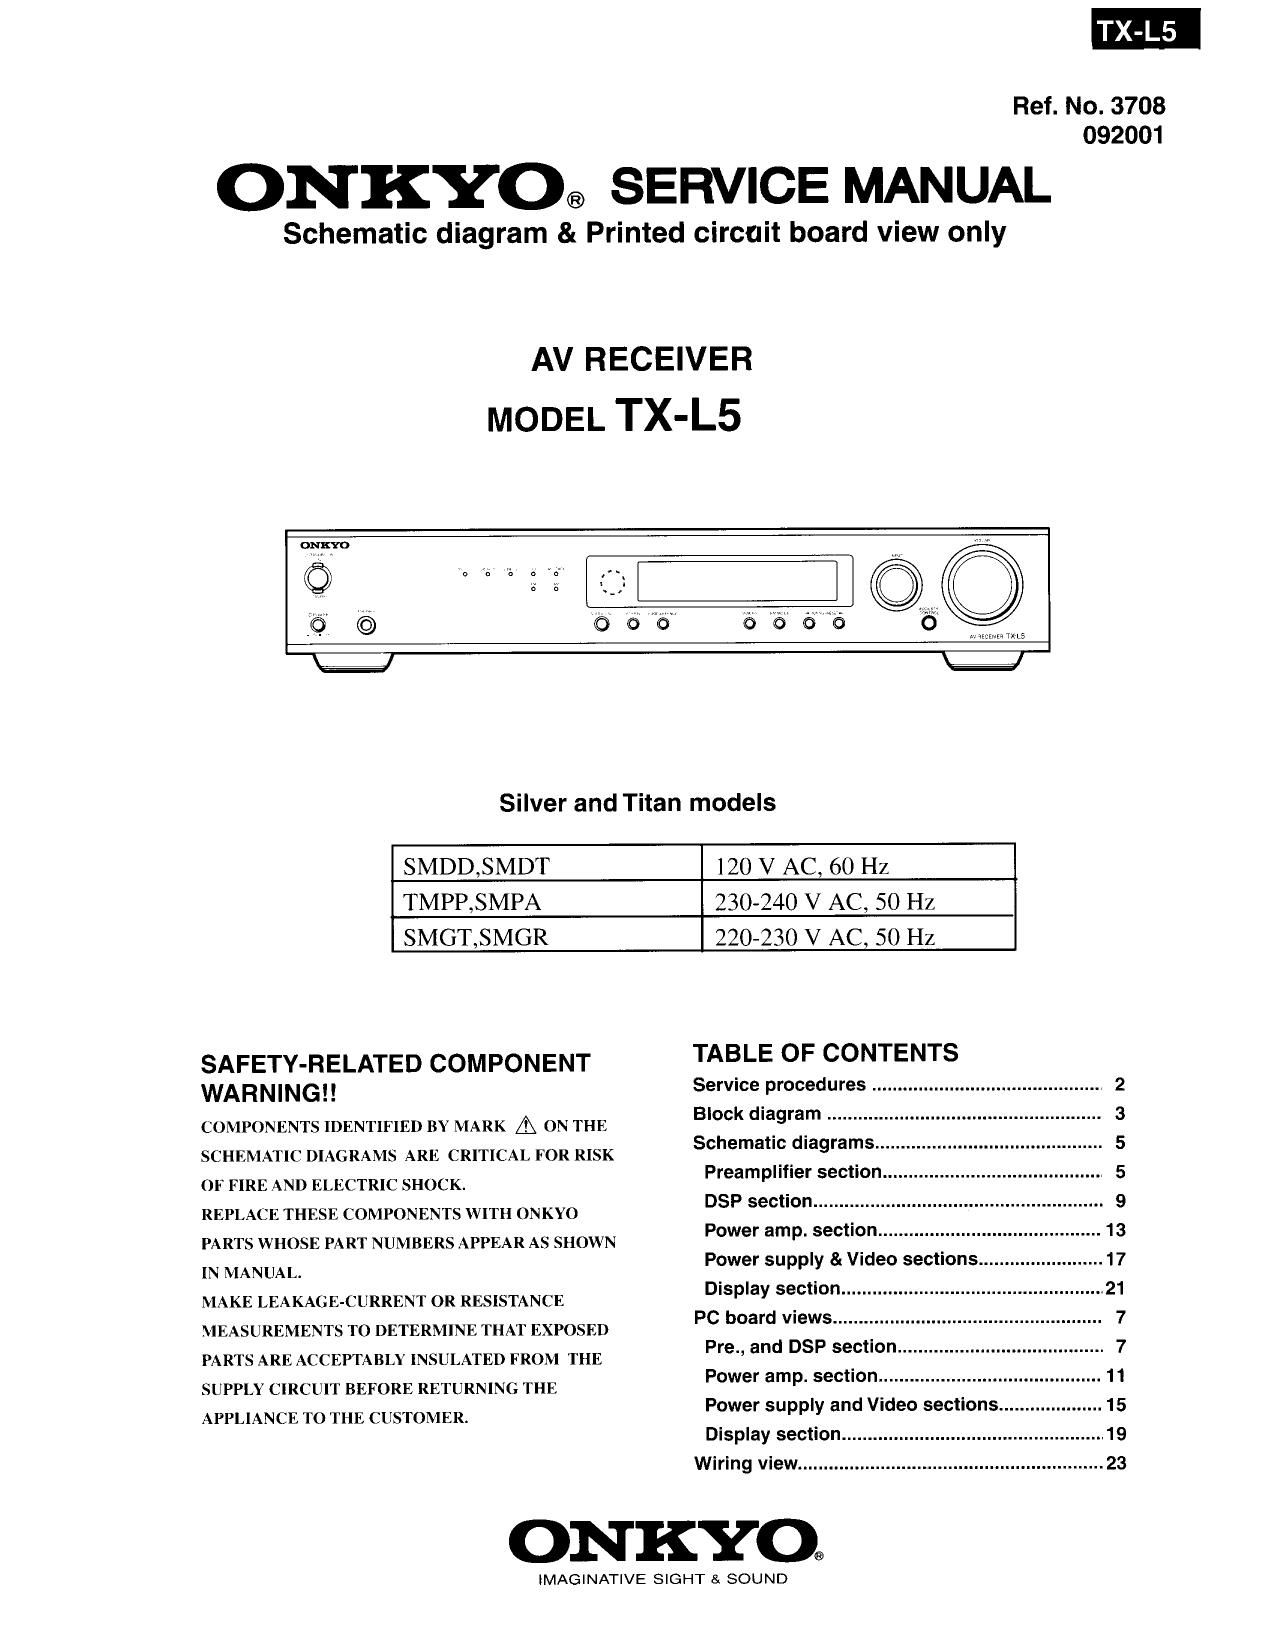 Onkyo TXL 5 Service Manual